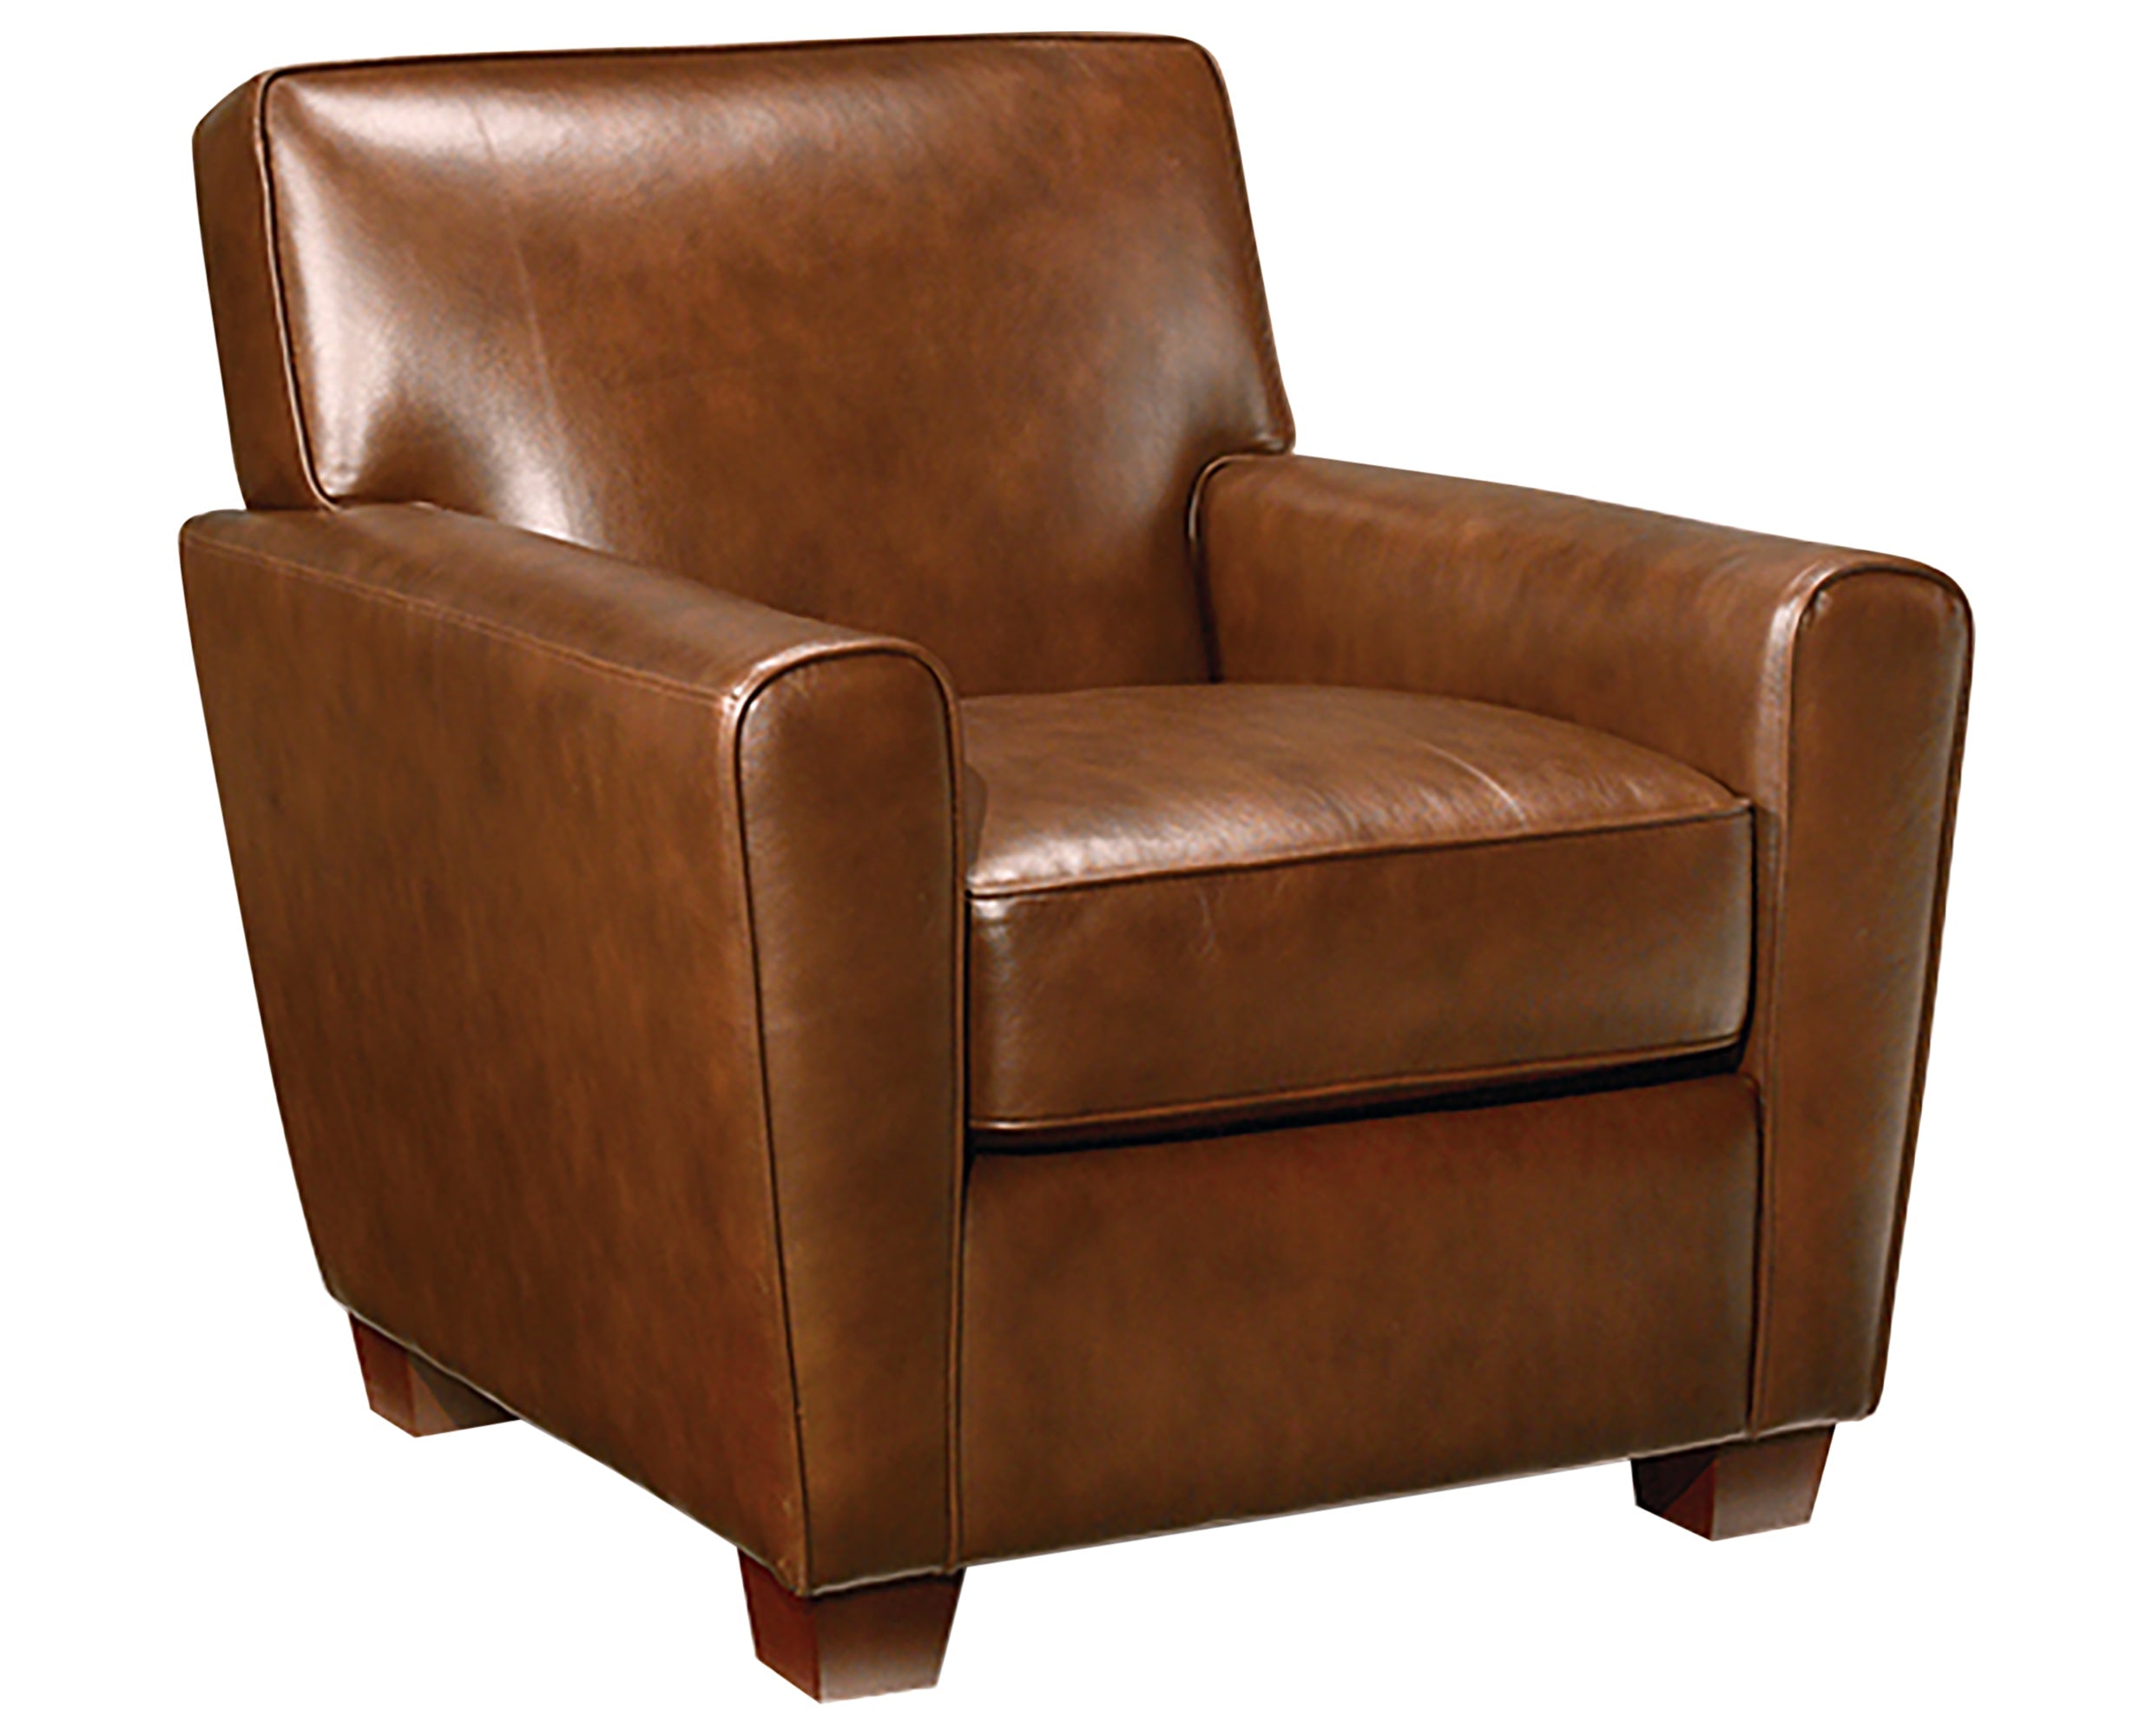 Chair as Shown | Legacy Martin Chair | Valley Ridge Furniture